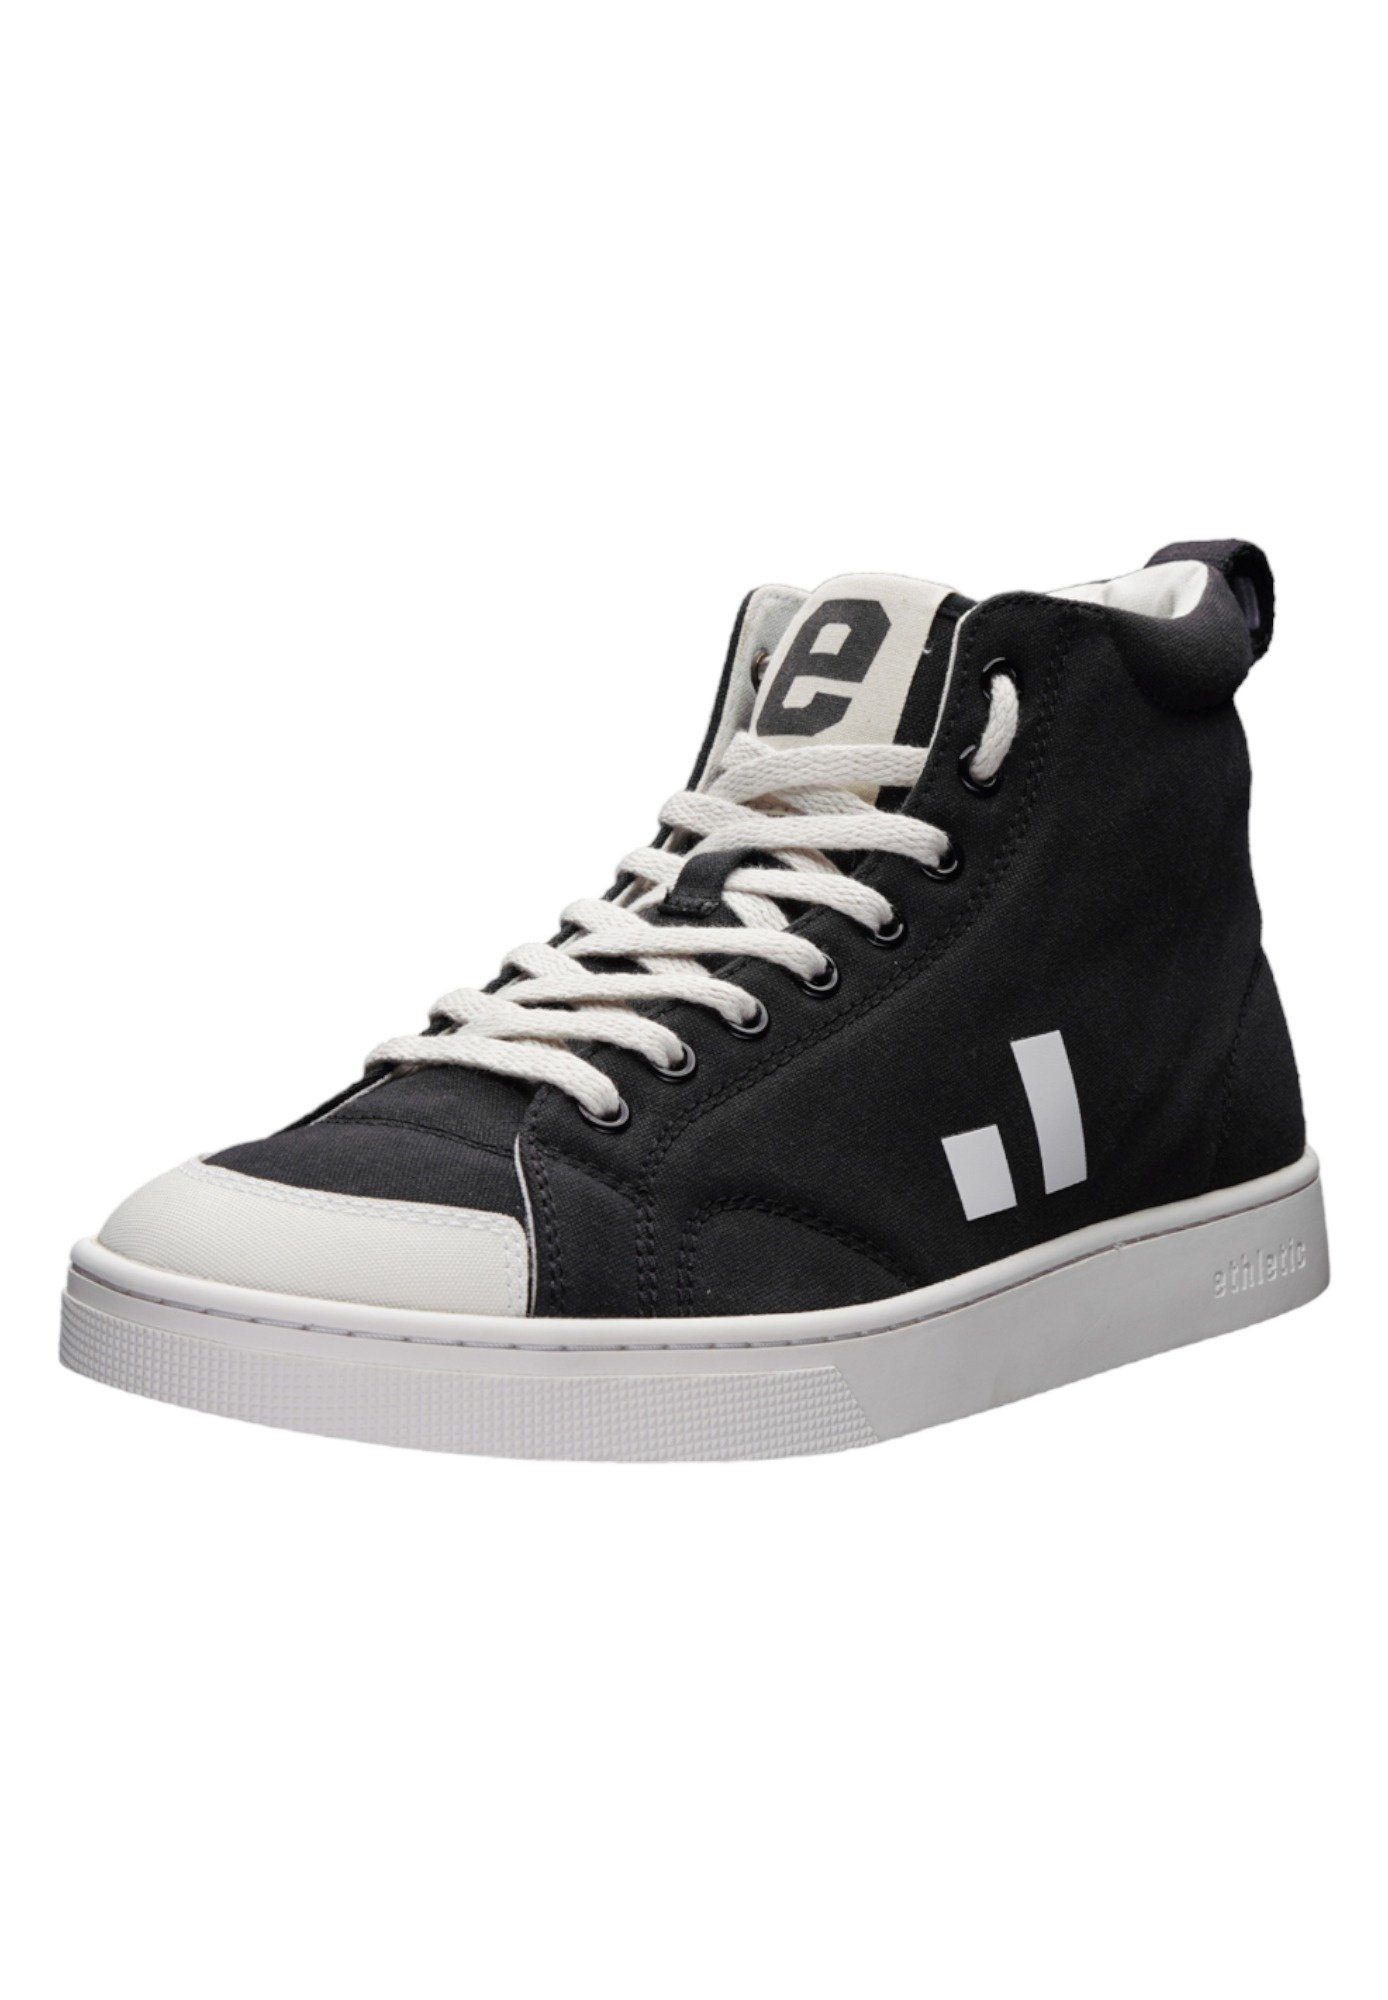 Schnäppchenkauf ETHLETIC Active Hi Cut Sneaker Jet Black Fairtrade Produkt - Just White